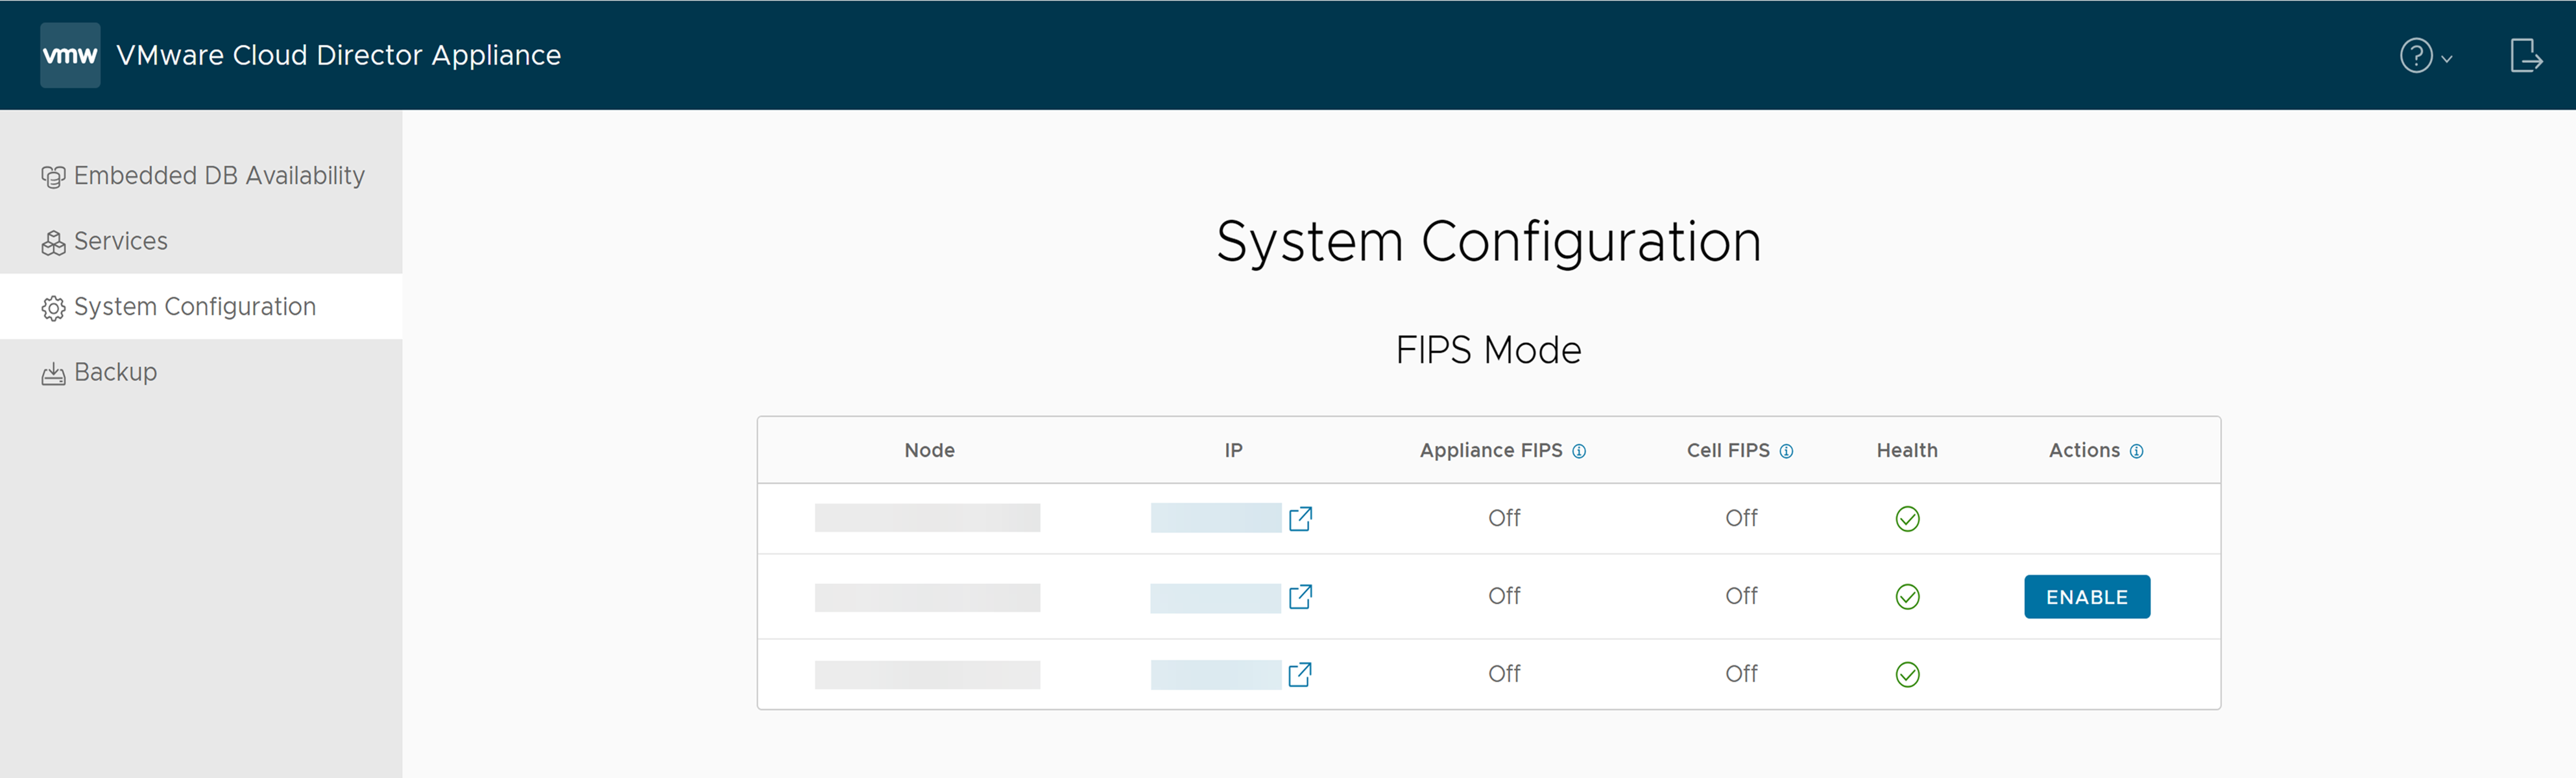 在 VMware Cloud Director 设备管理 UI 的“系统配置”选项卡上，可以找到 FIPS 模式信息。